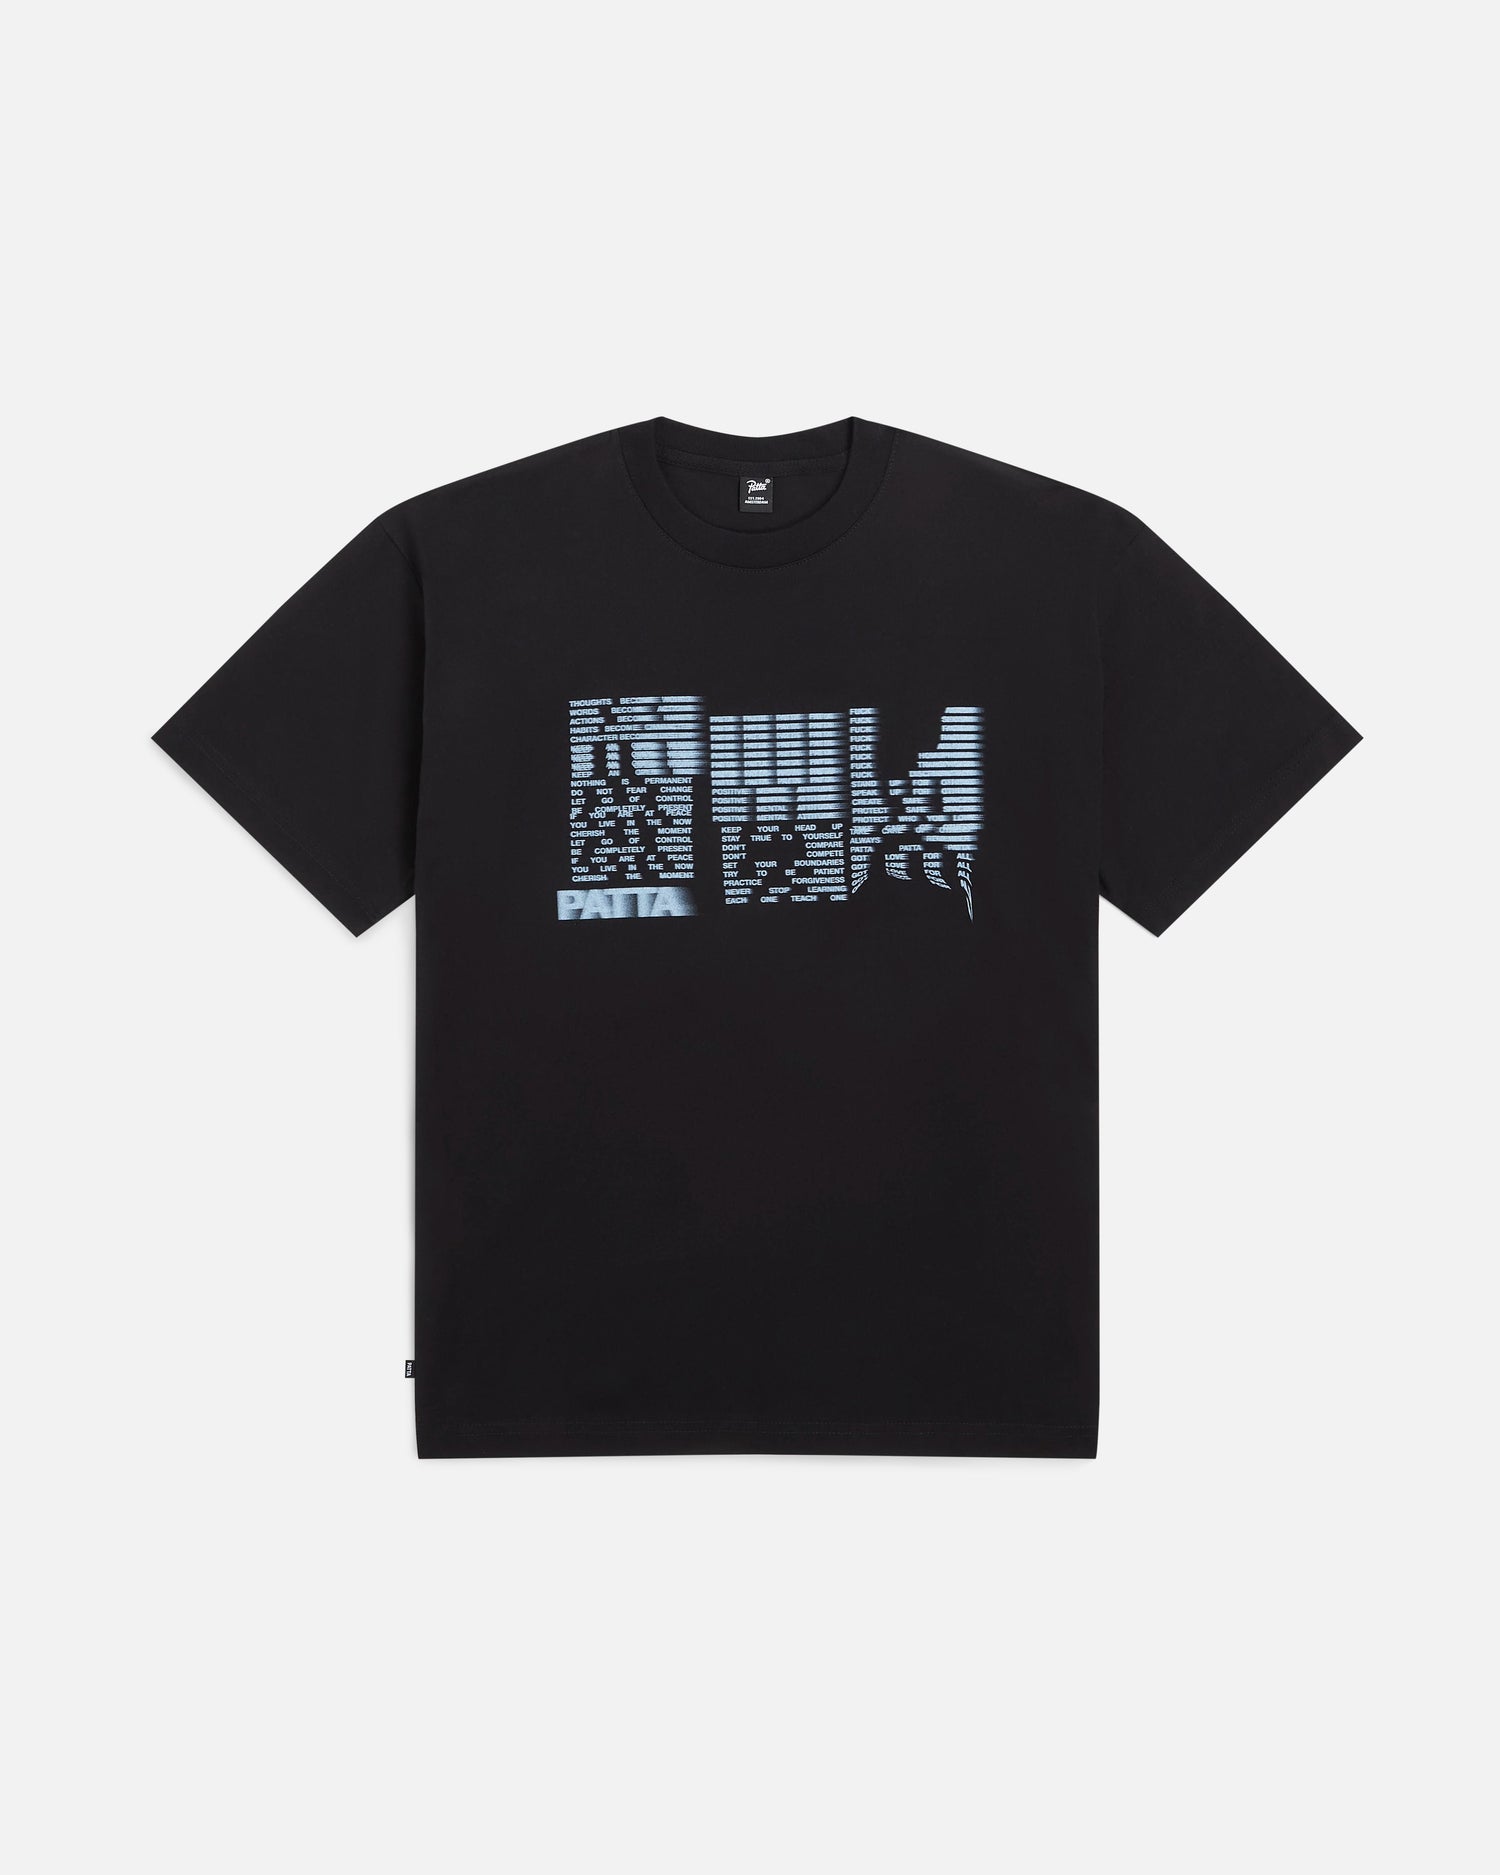 Patta Glitch T-Shirt (Black)